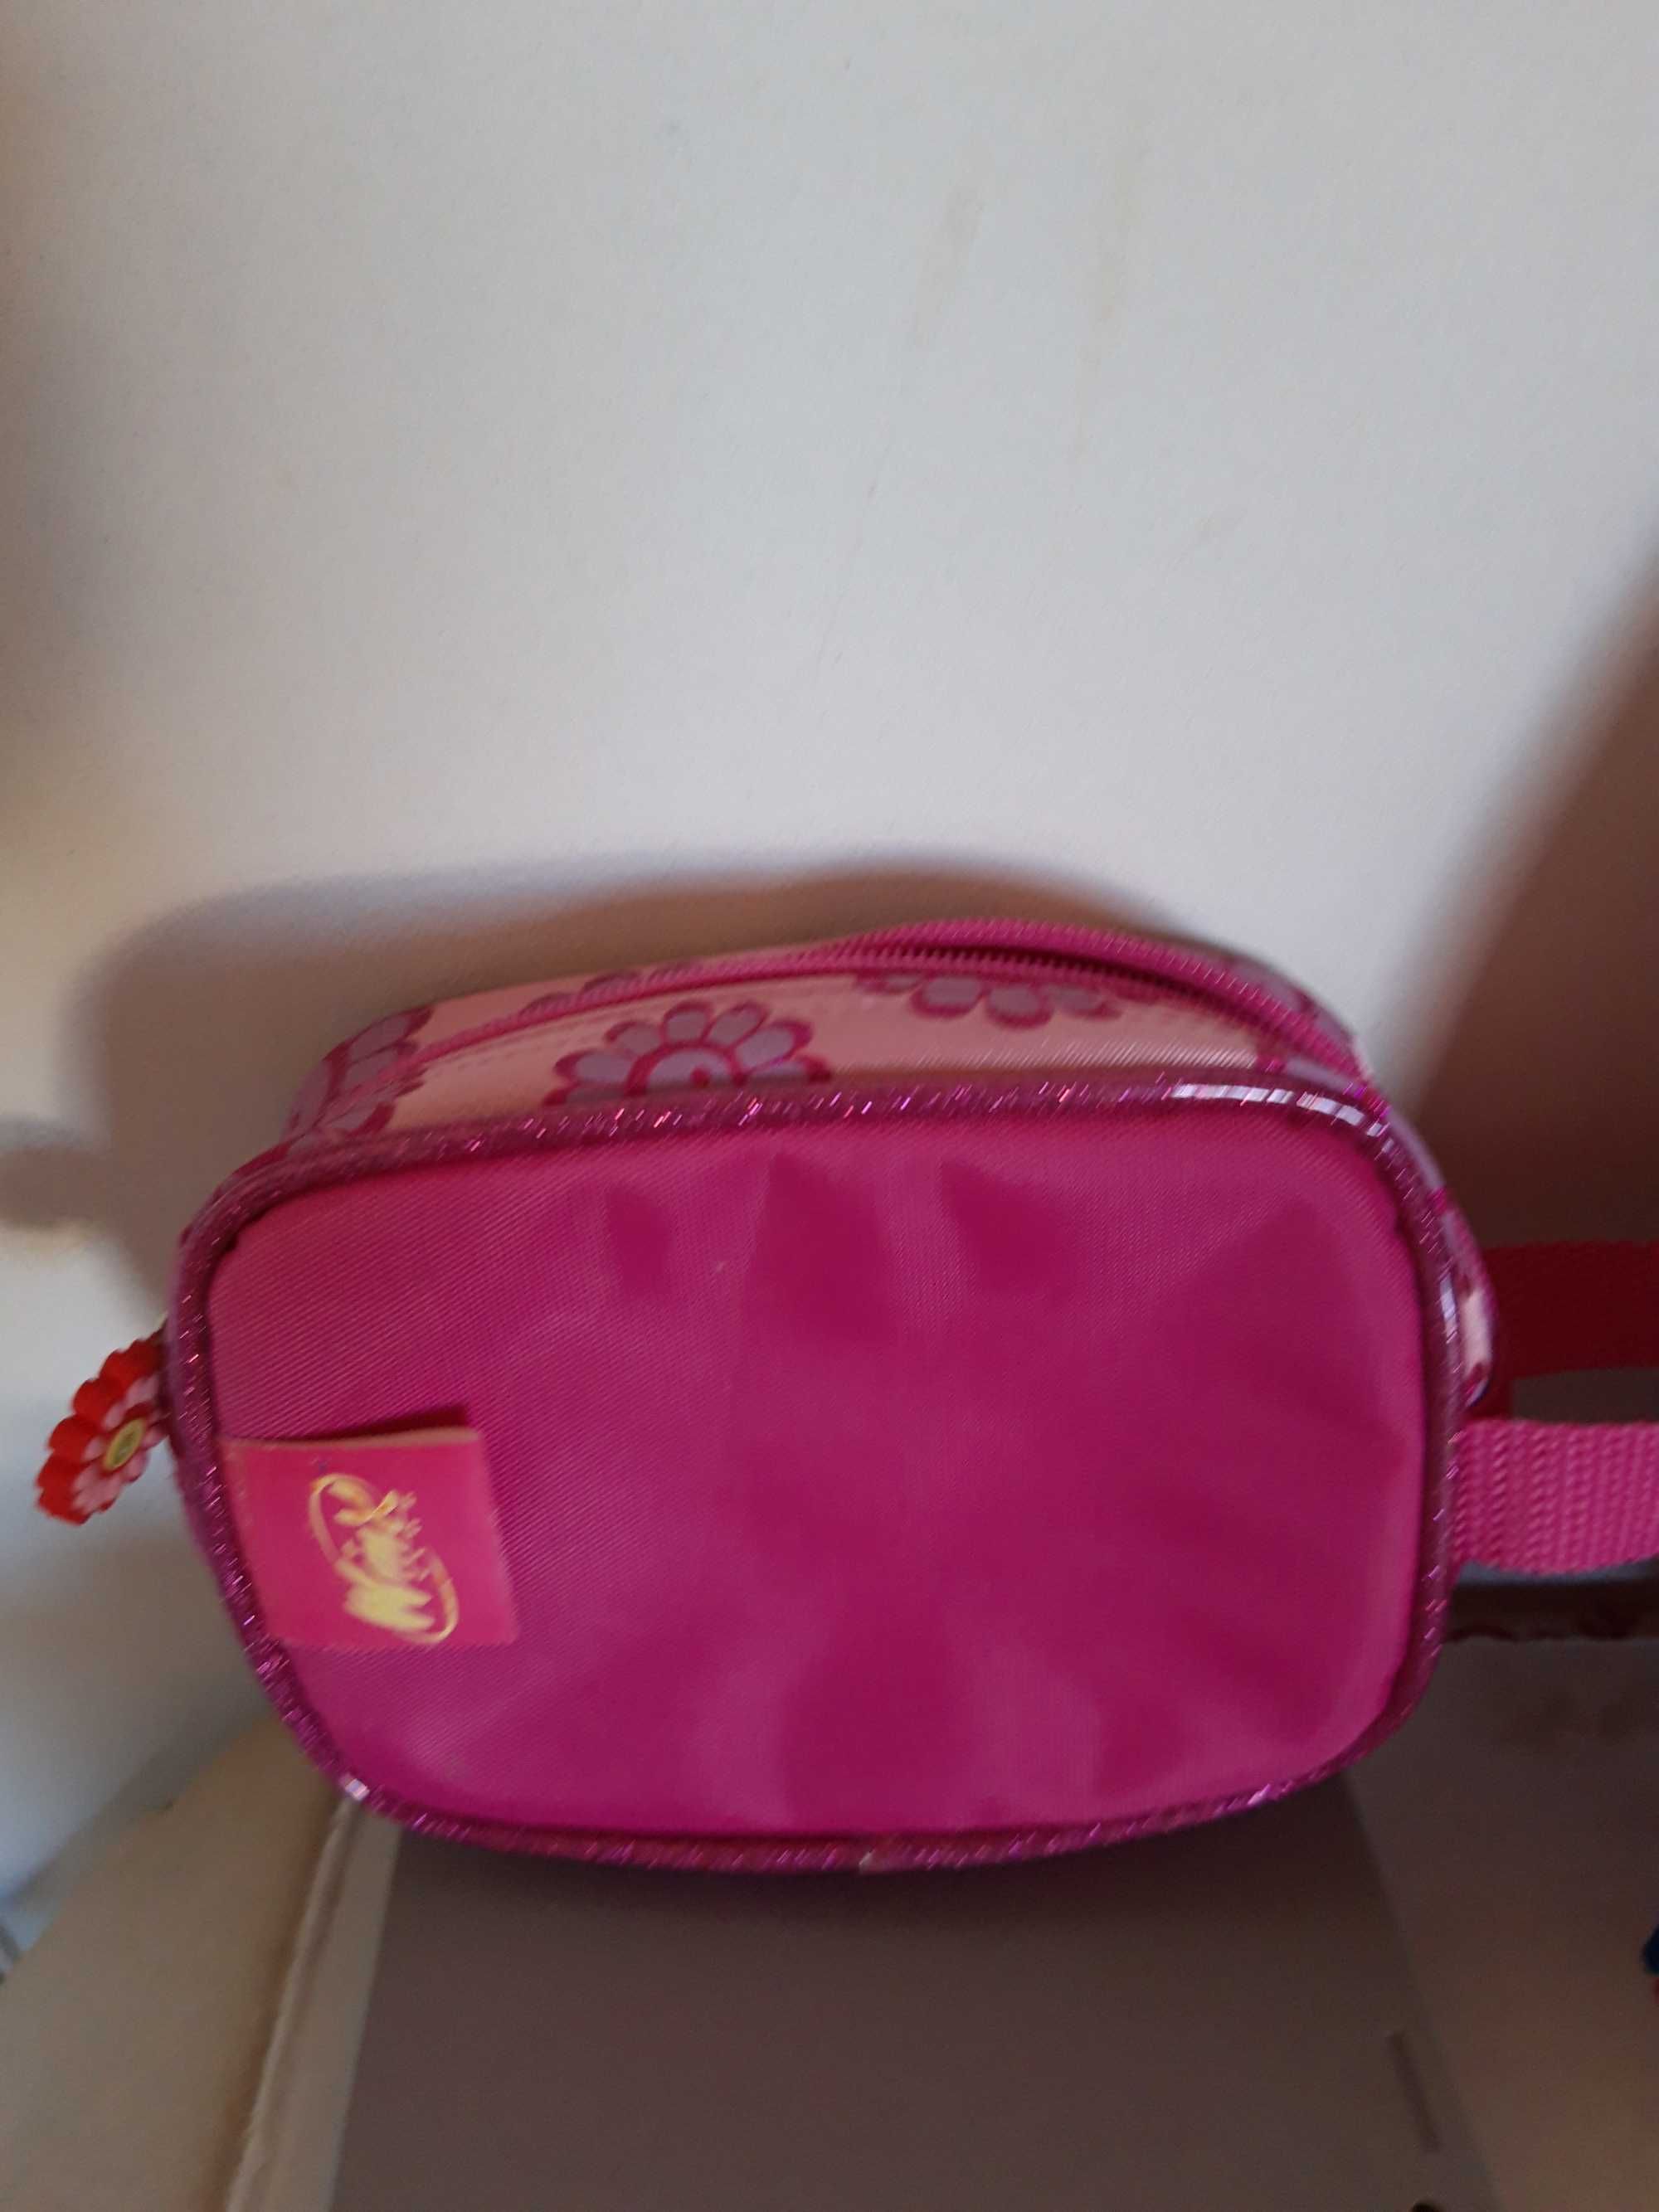 Czerwona torebka Minnie  + różowa  torebka